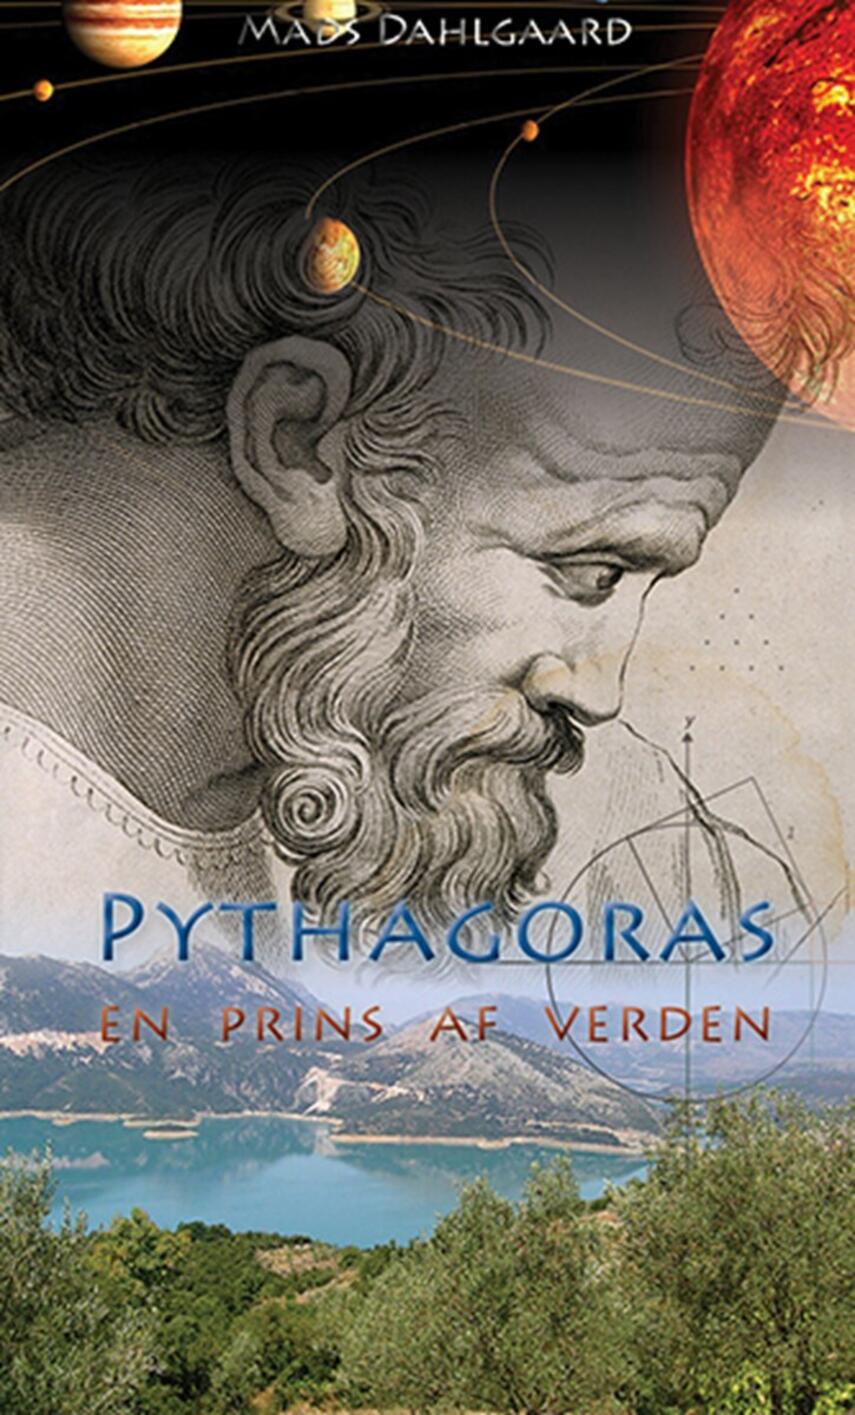 Mads Dahlgaard: Pythagoras : en prins af verden